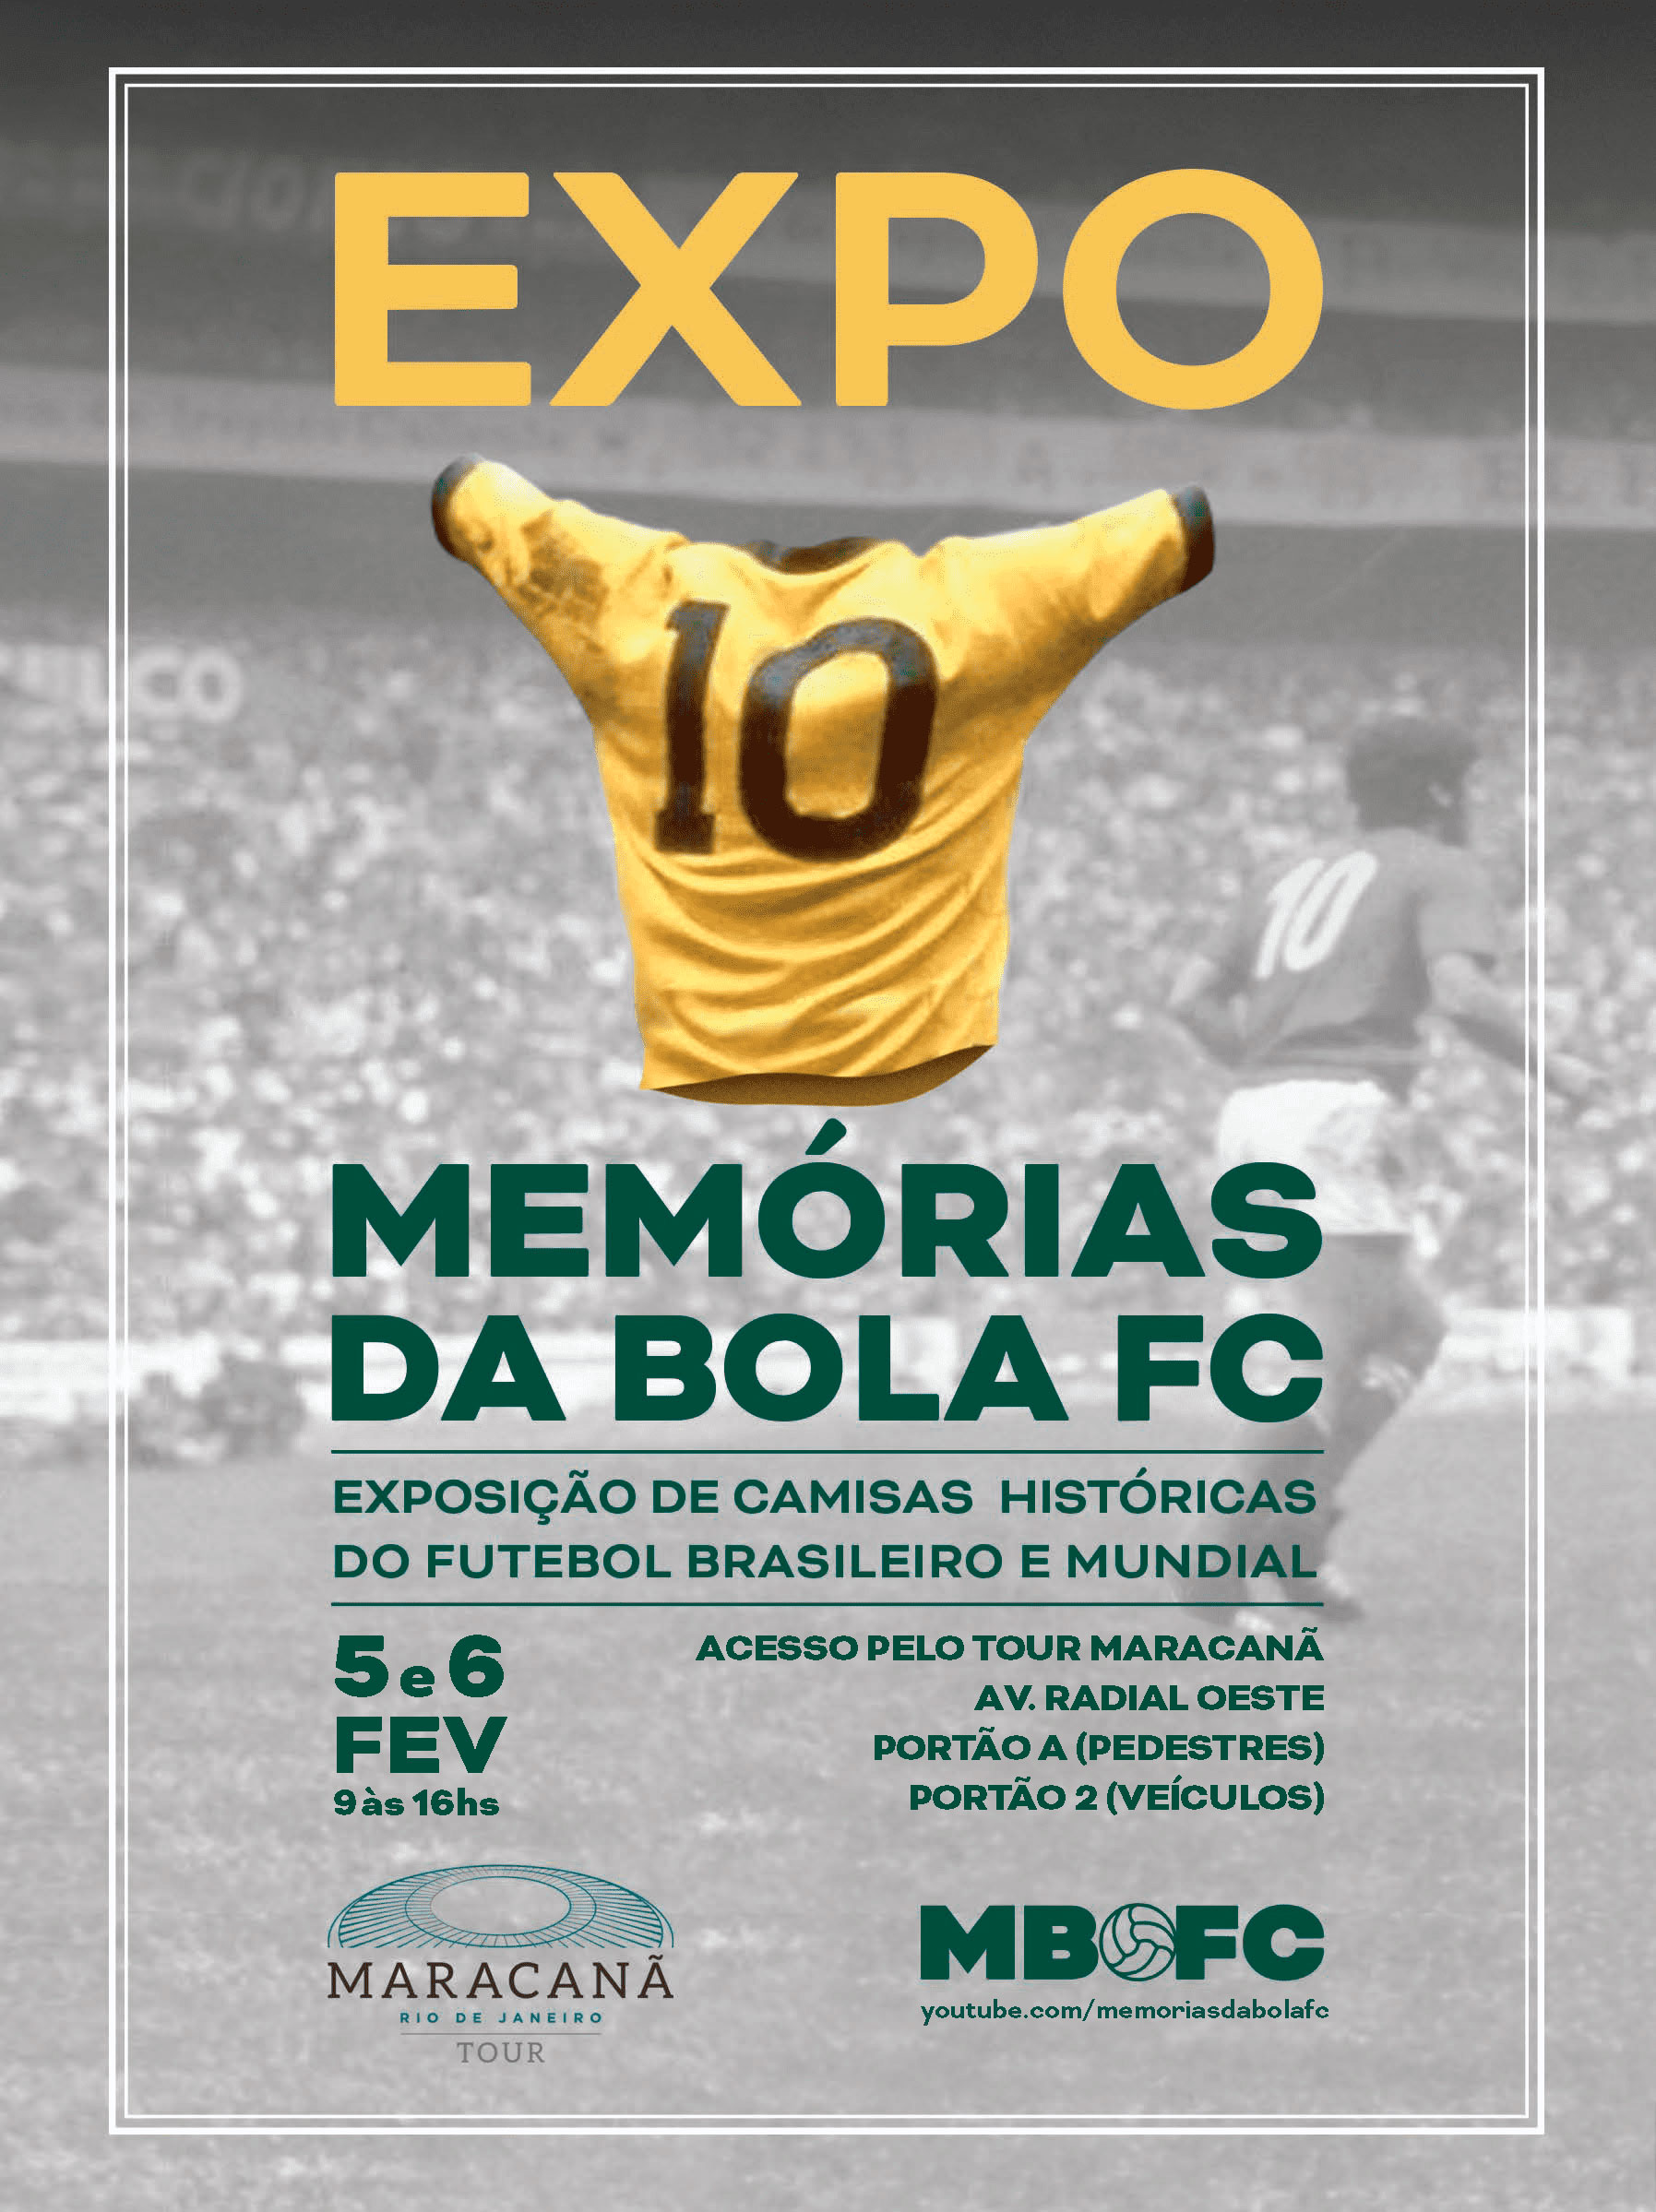 Expo Memórias da Bola FC